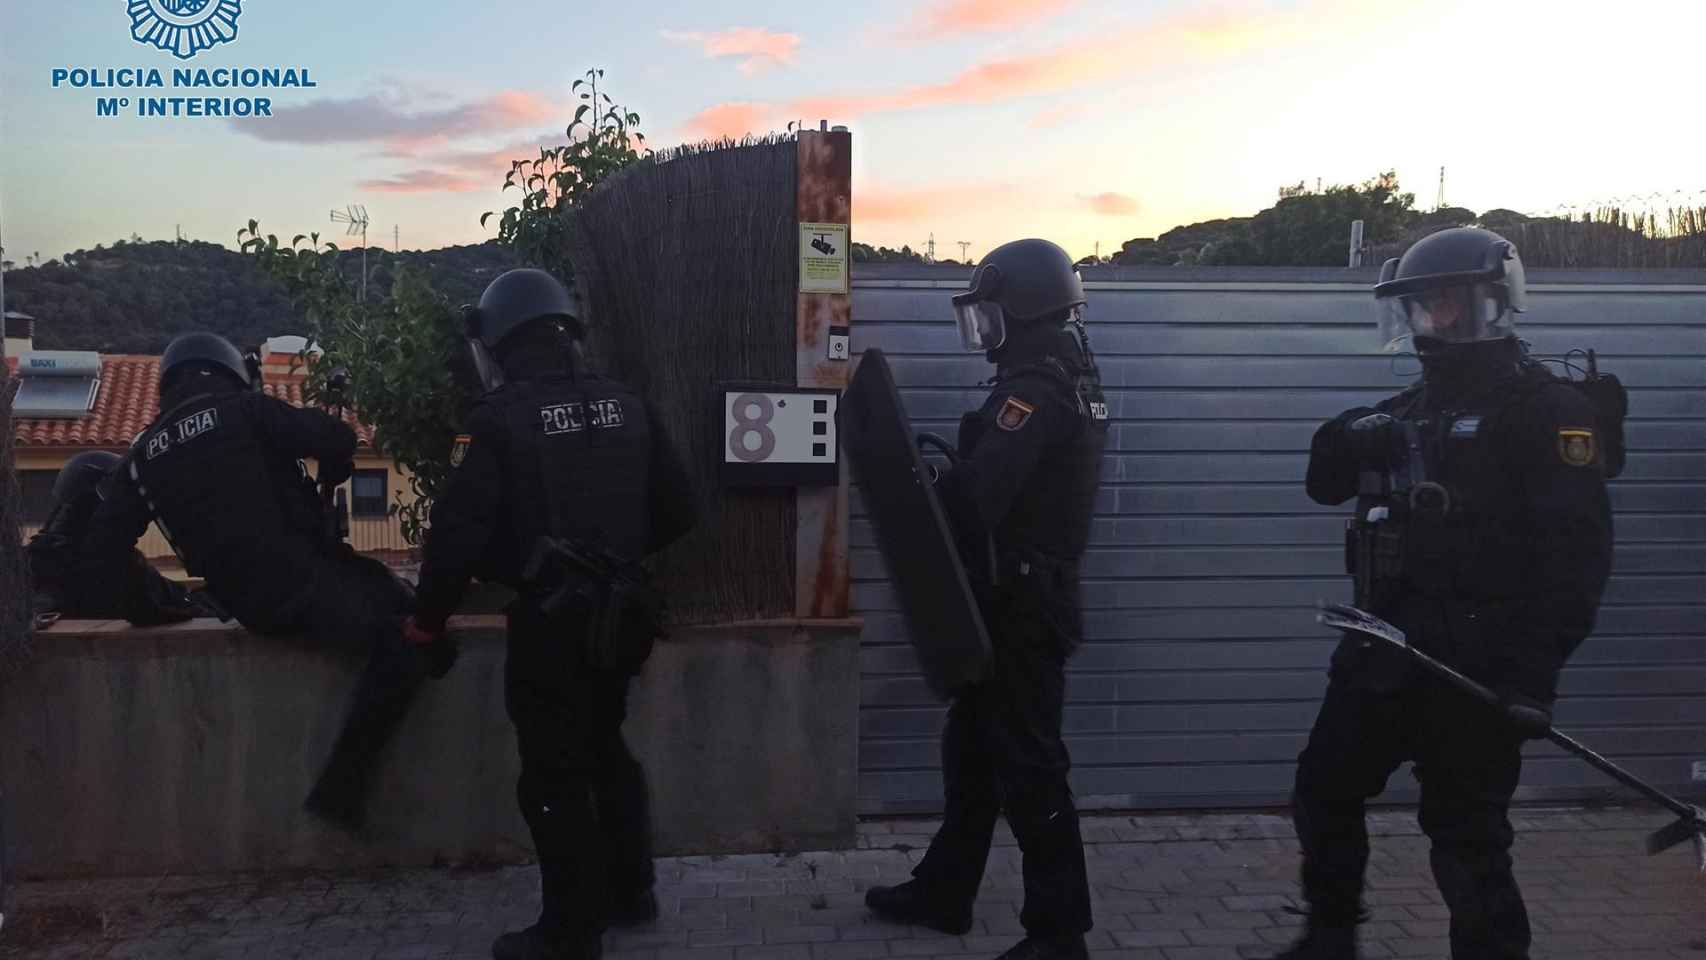 Agentes de la Policía Nacional durante un operativo en el Maresme (Barcelona) / POLICÍA NACIONAL